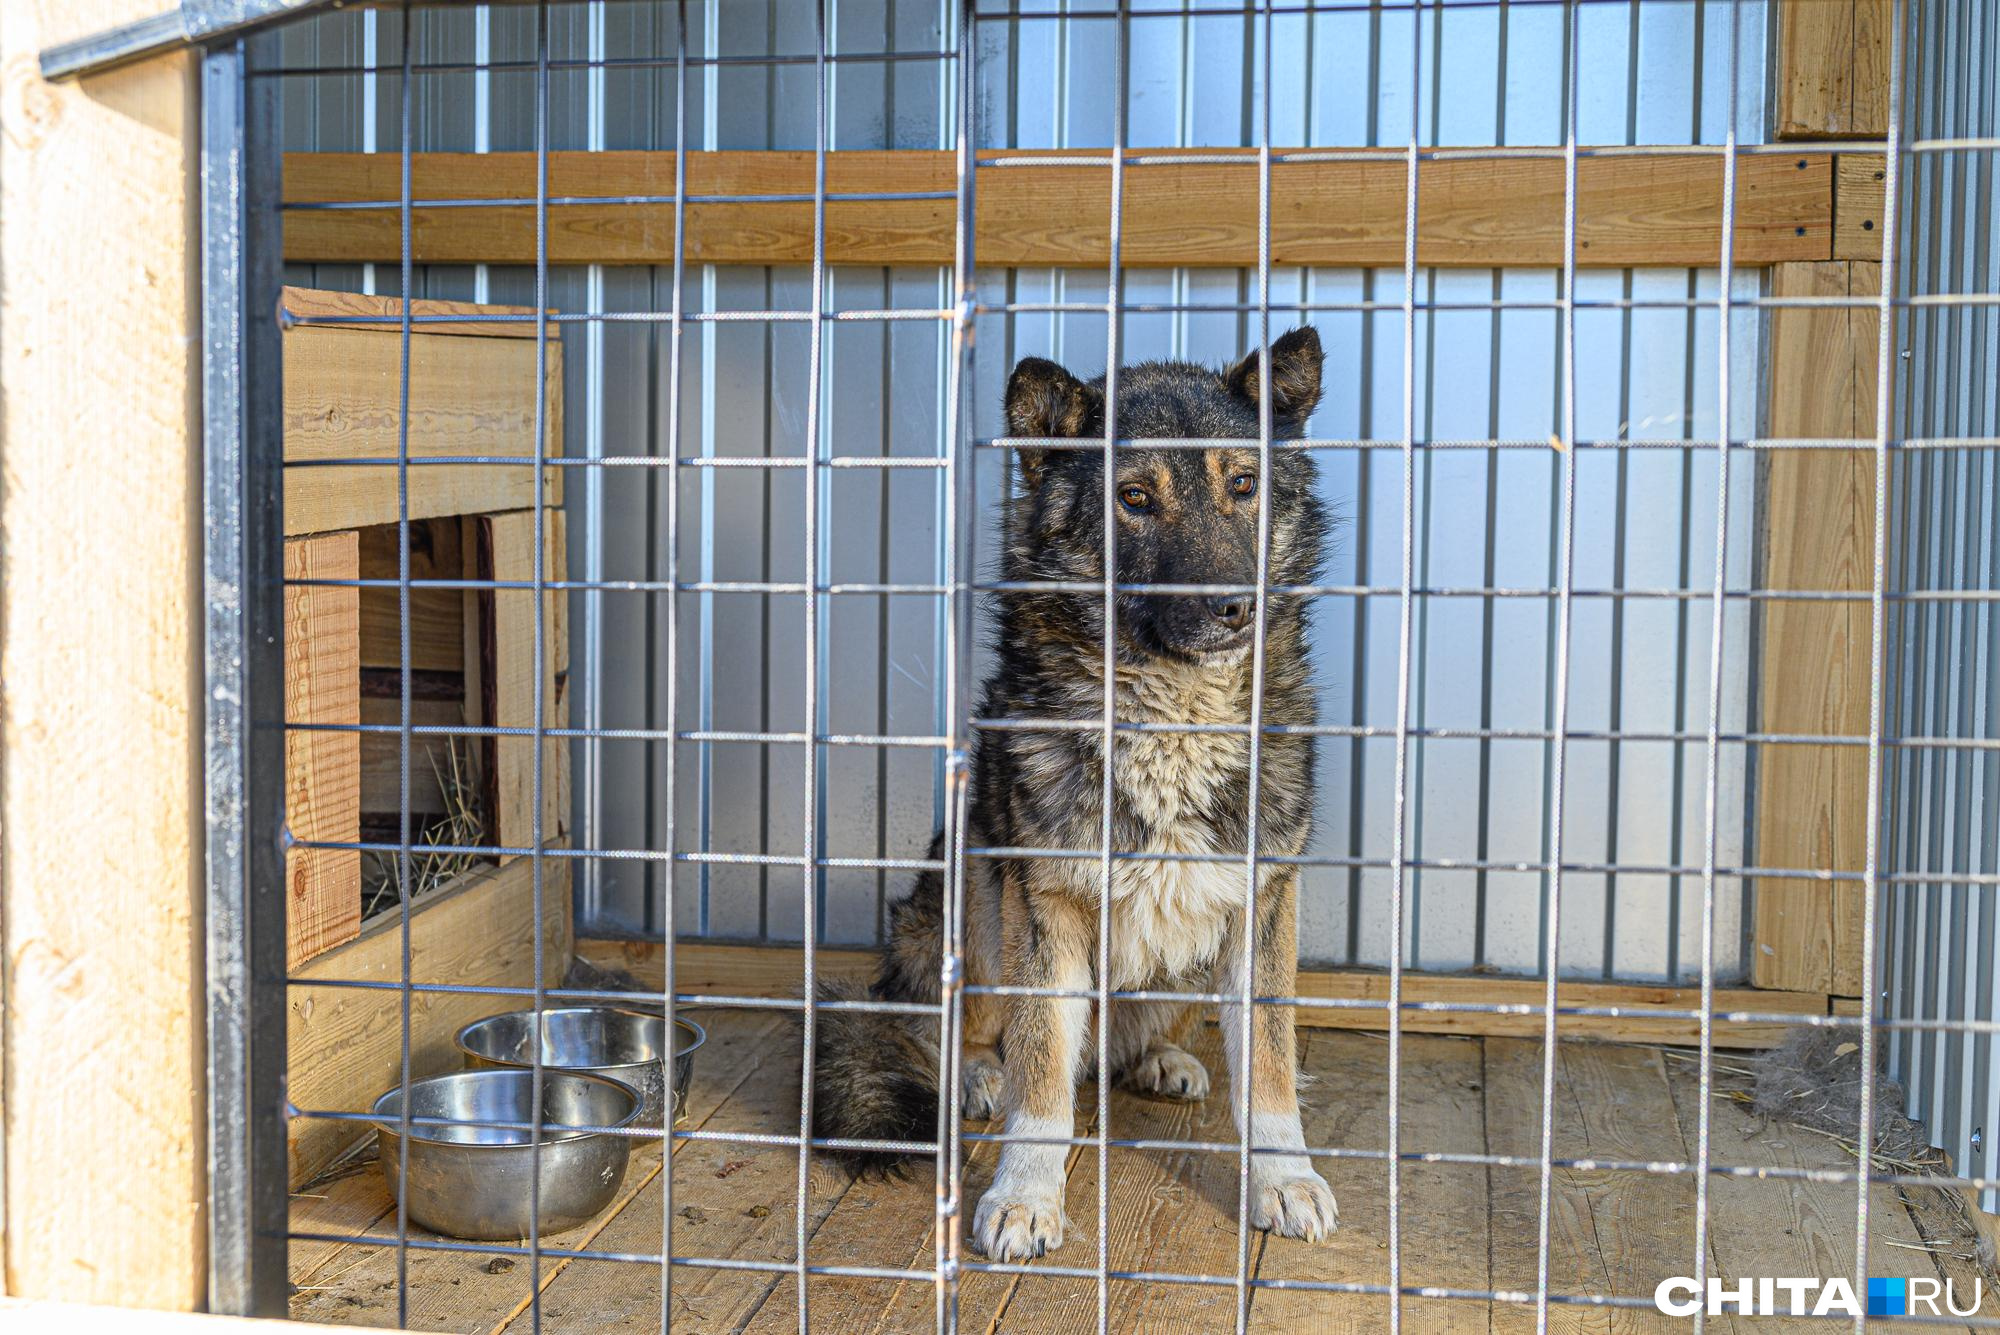 Республика Тыва приняла закон об эвтаназии бездомных собак